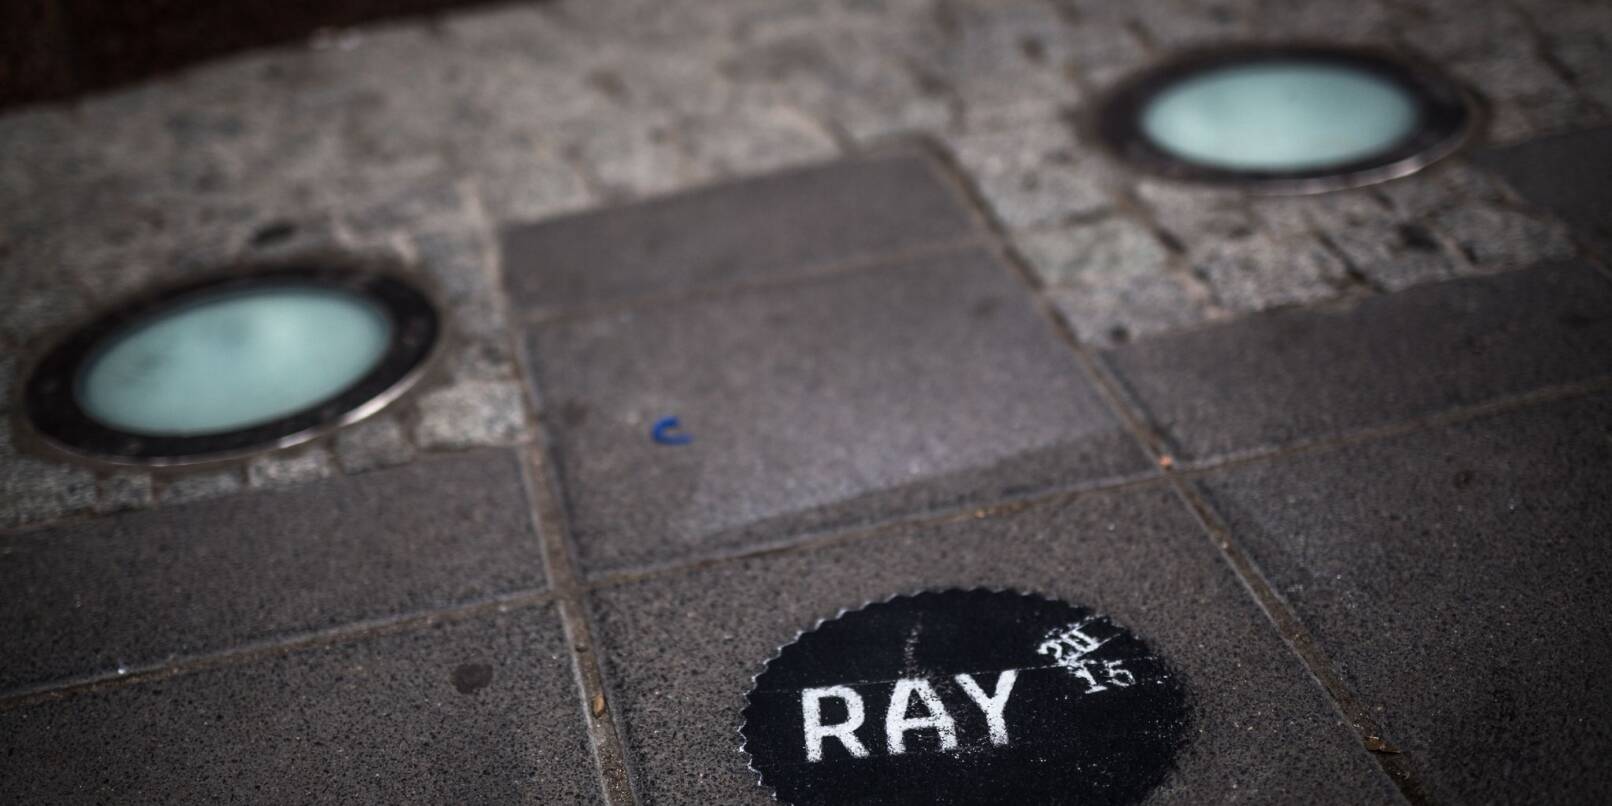 Ein auf den Gehweg gesprühtes Zeichen weist auf die «Triennale der Fotografie RAY» hin.